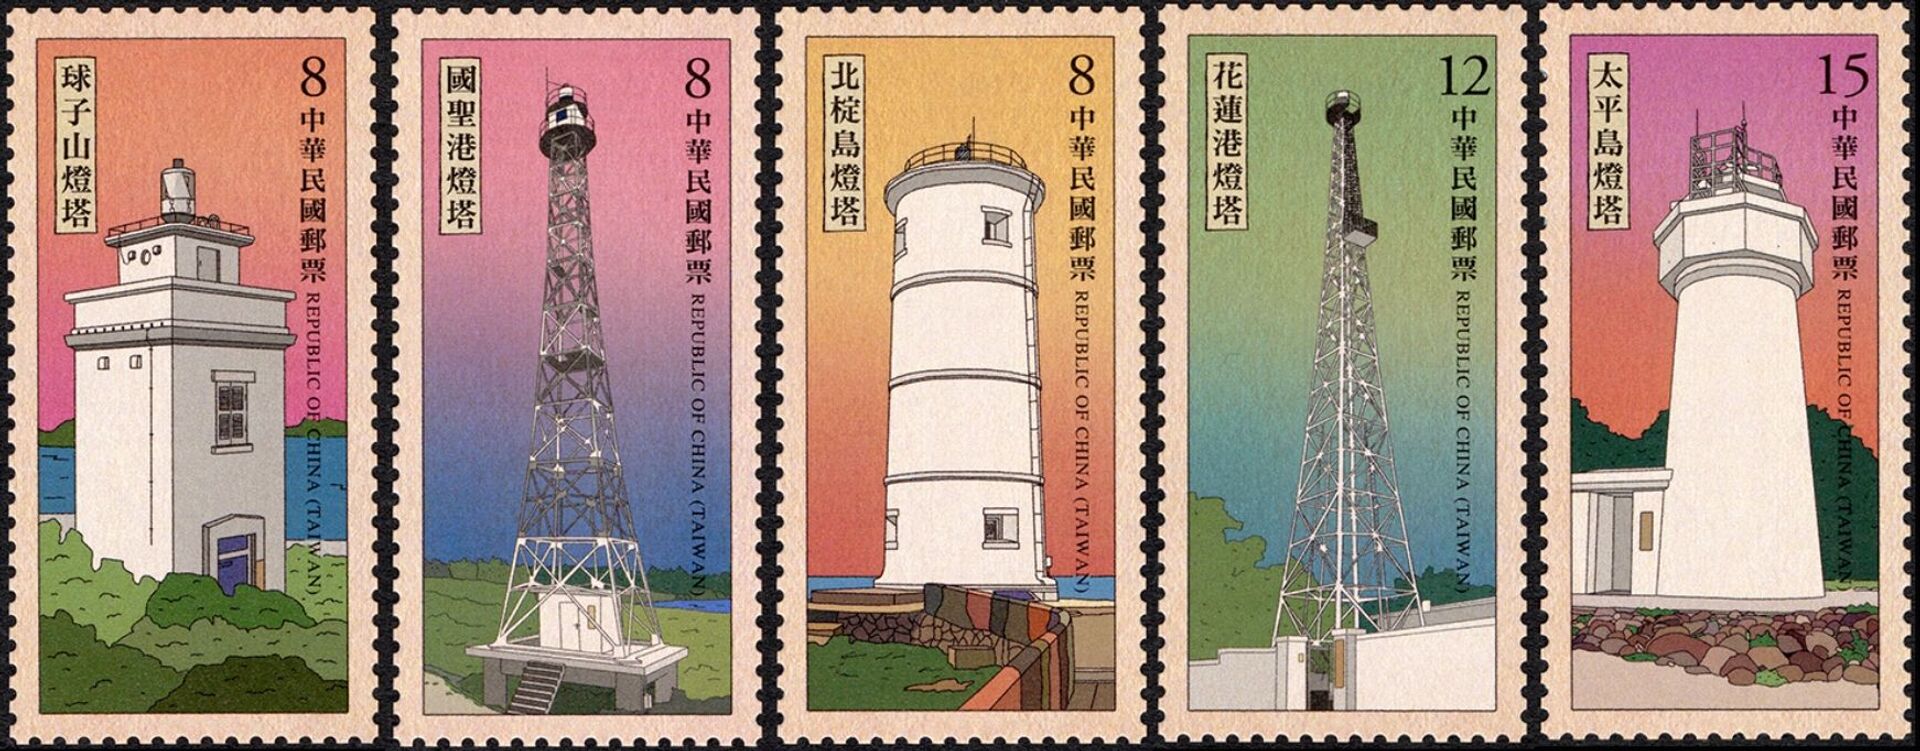 Trường Sa là của Việt Nam: Phẫn nộ vì bộ tem Đài Loan vi phạm chủ quyền - Sputnik Việt Nam, 1920, 13.04.2021